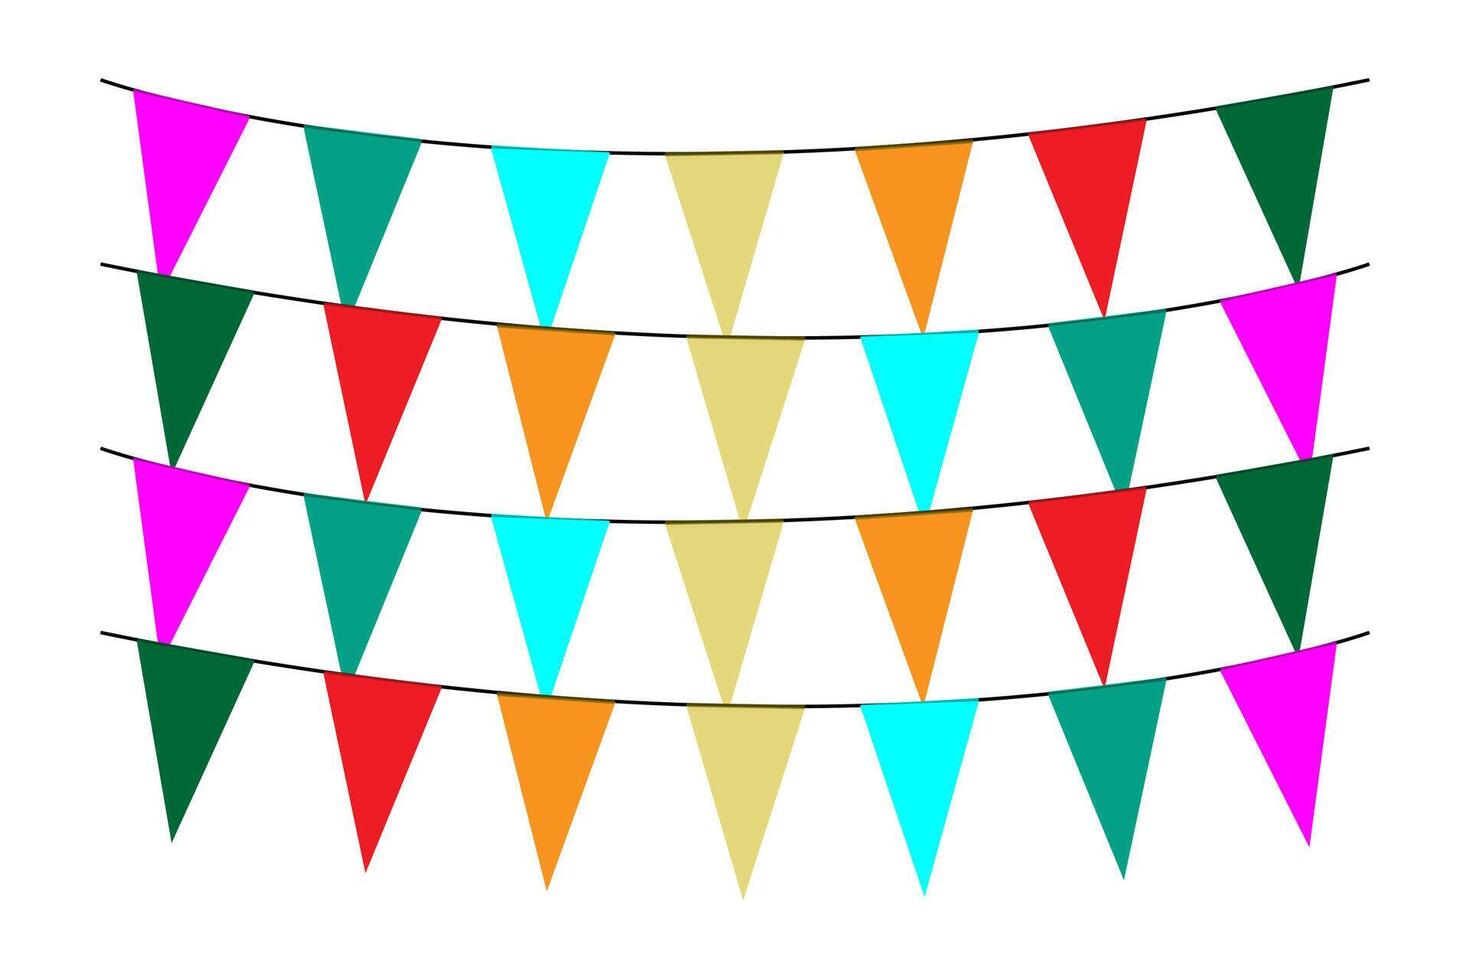 cumprimento ou festa convite com carnaval bandeira guirlandas com colorida suspensão acima. vetor